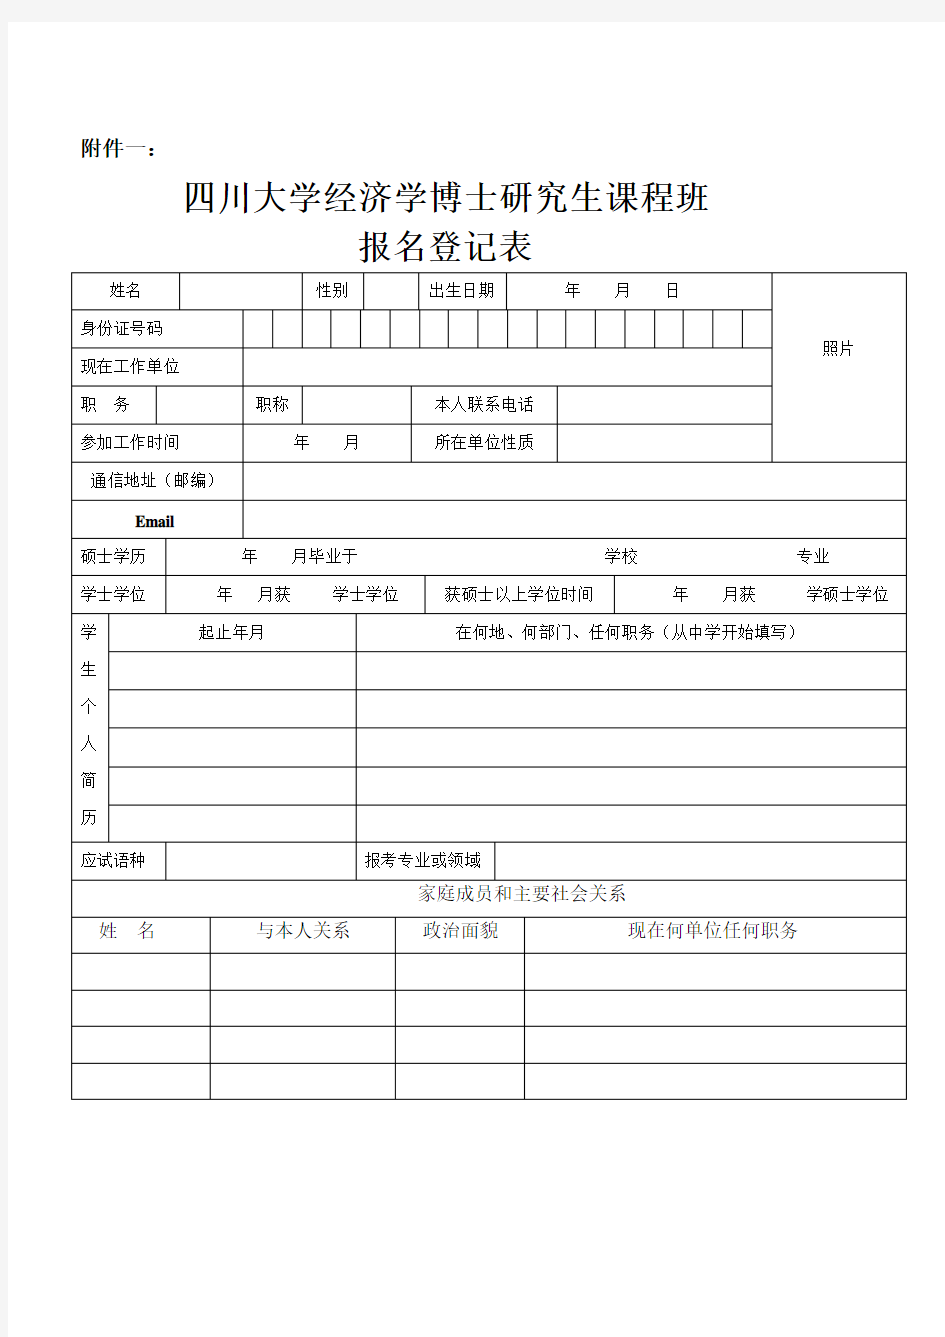 四川大学经济学博士研究生课程班登记表